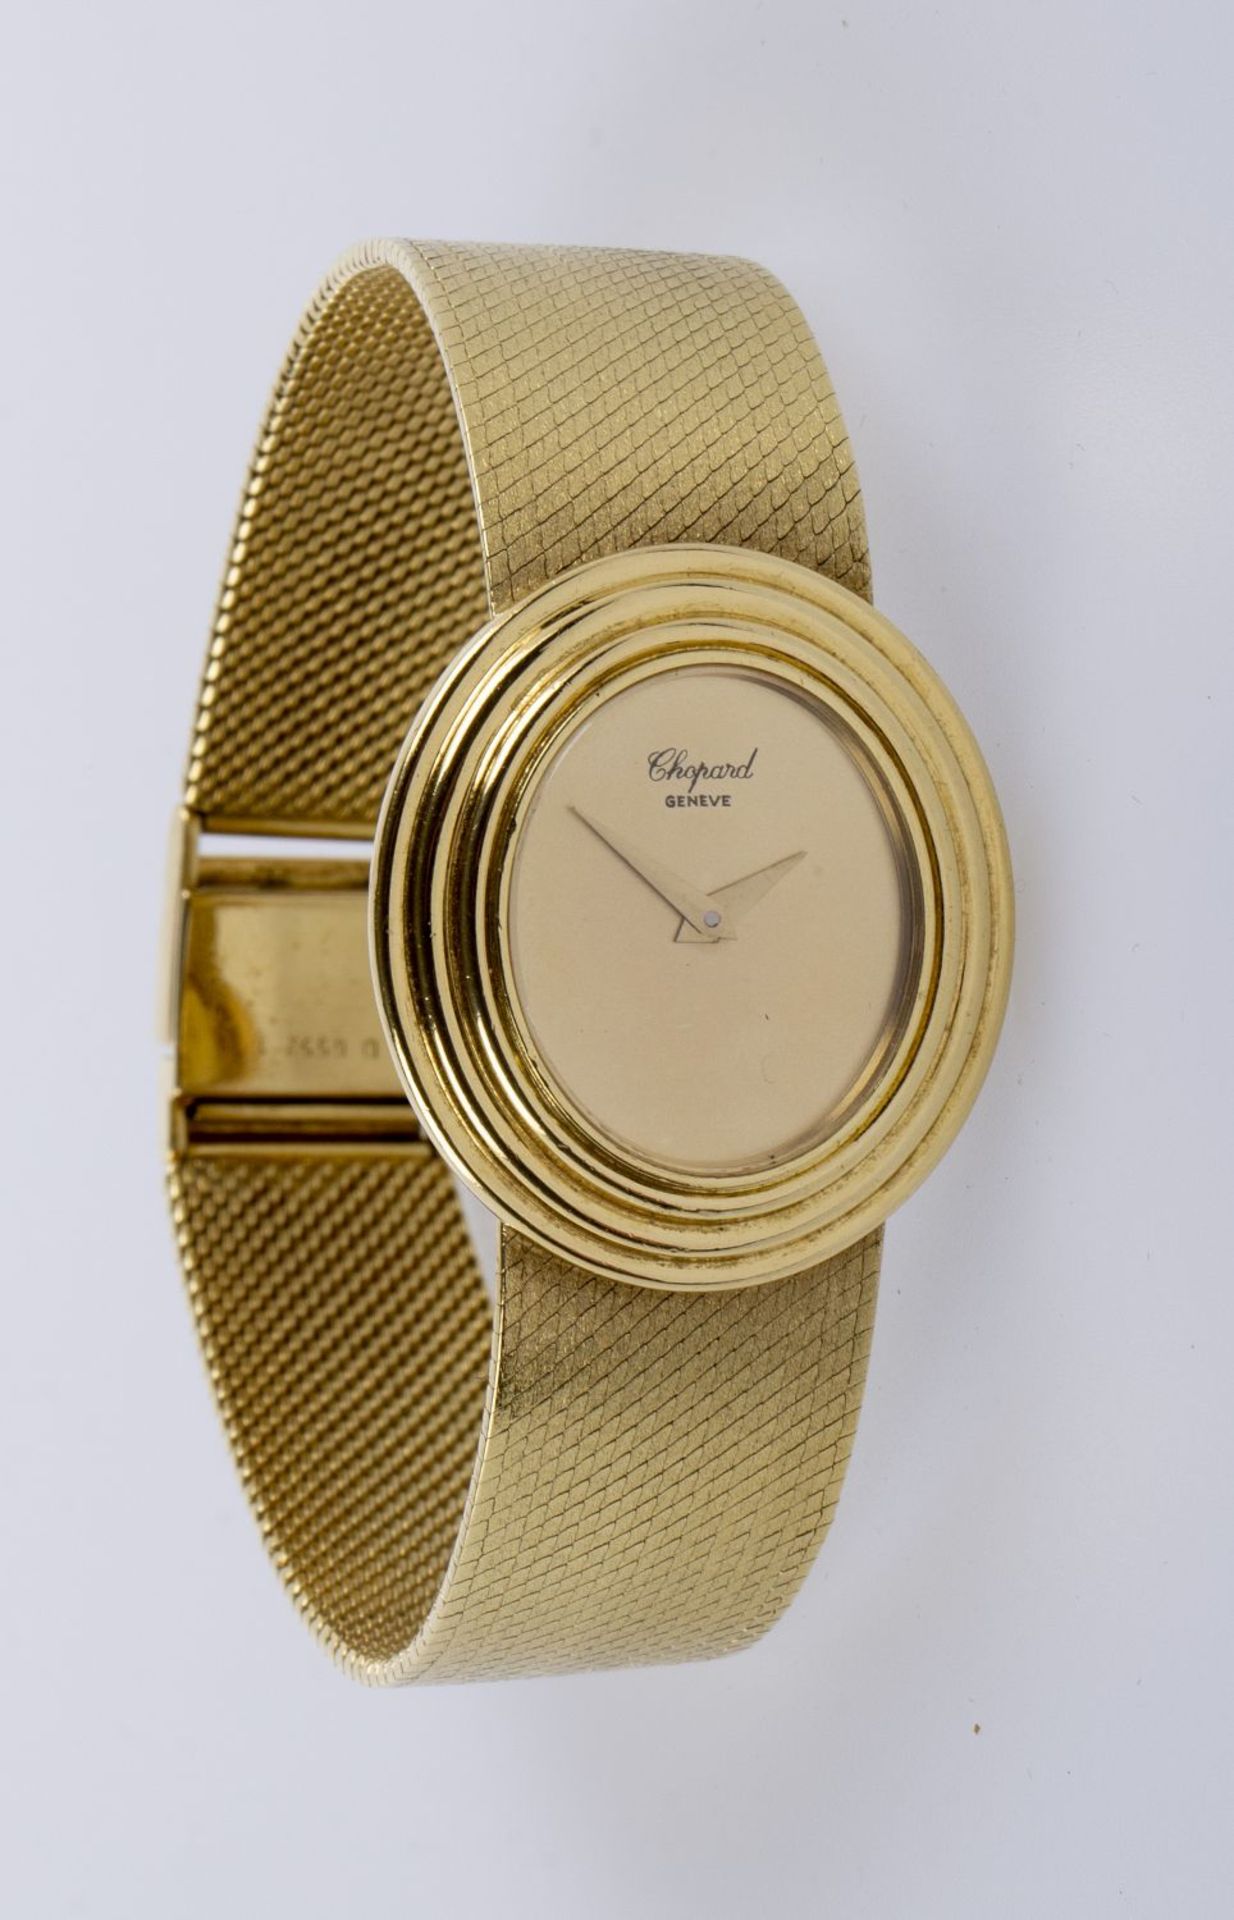 Damenarmbanduhr von Chopard Gehäuse und Armband aus Gelbgold 750. Ovales vergoldetes Zifferblatt. Fi - Image 4 of 8